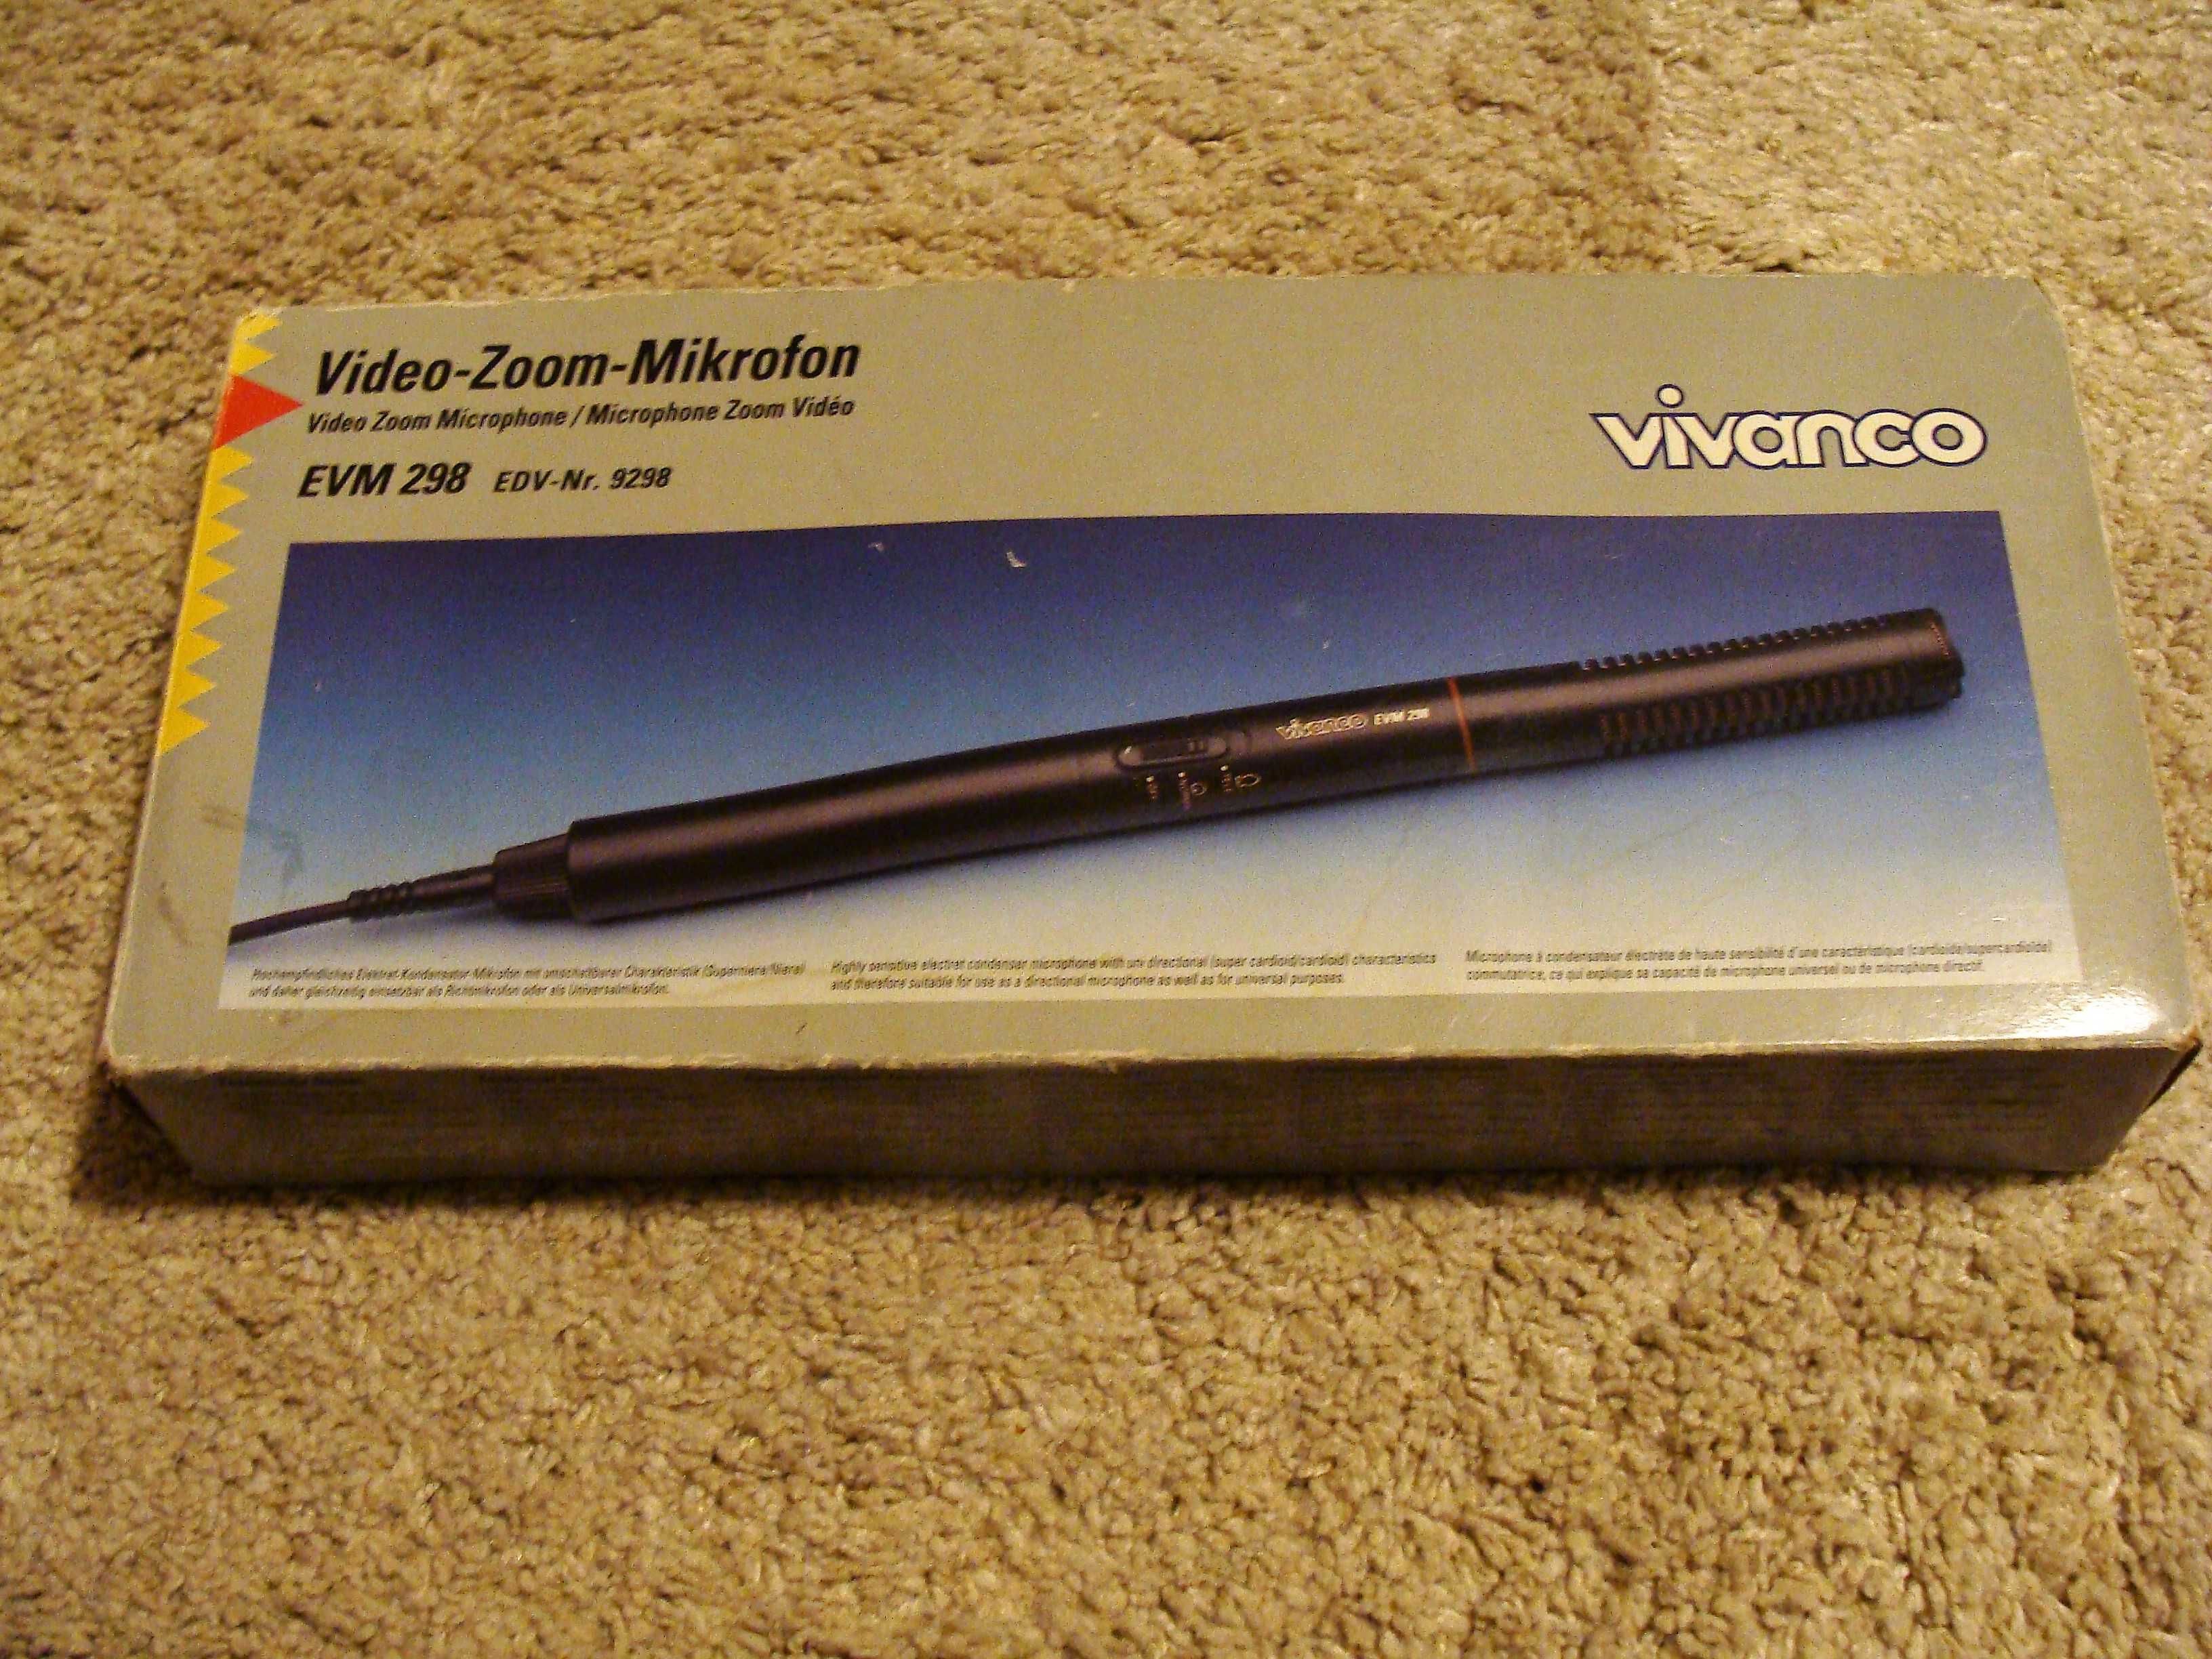 Microfone Vivanco (EVM 298  - EDV Nr 9298) - vídeo zoom